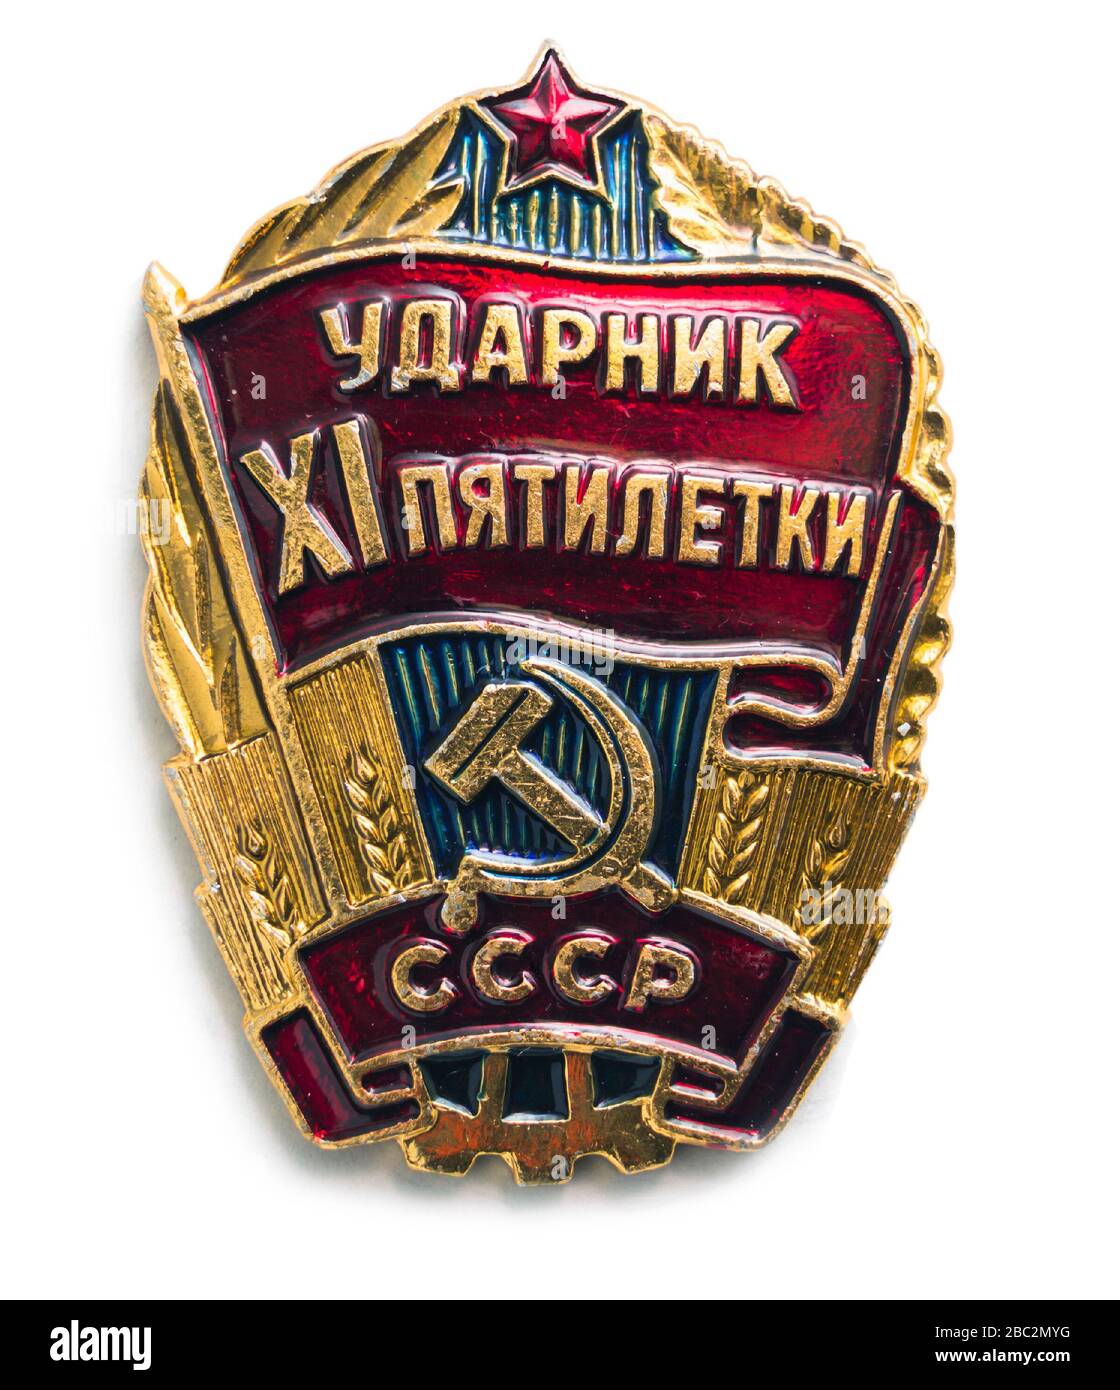 Mosca, Russia - 01 aprile 2020.: Questo distintivo sovietico è stato assegnato da lavoratori di produzione avanzata. Titolo sul distintivo: Lavoratore shock del XI-esimo piano quinquennale Foto Stock